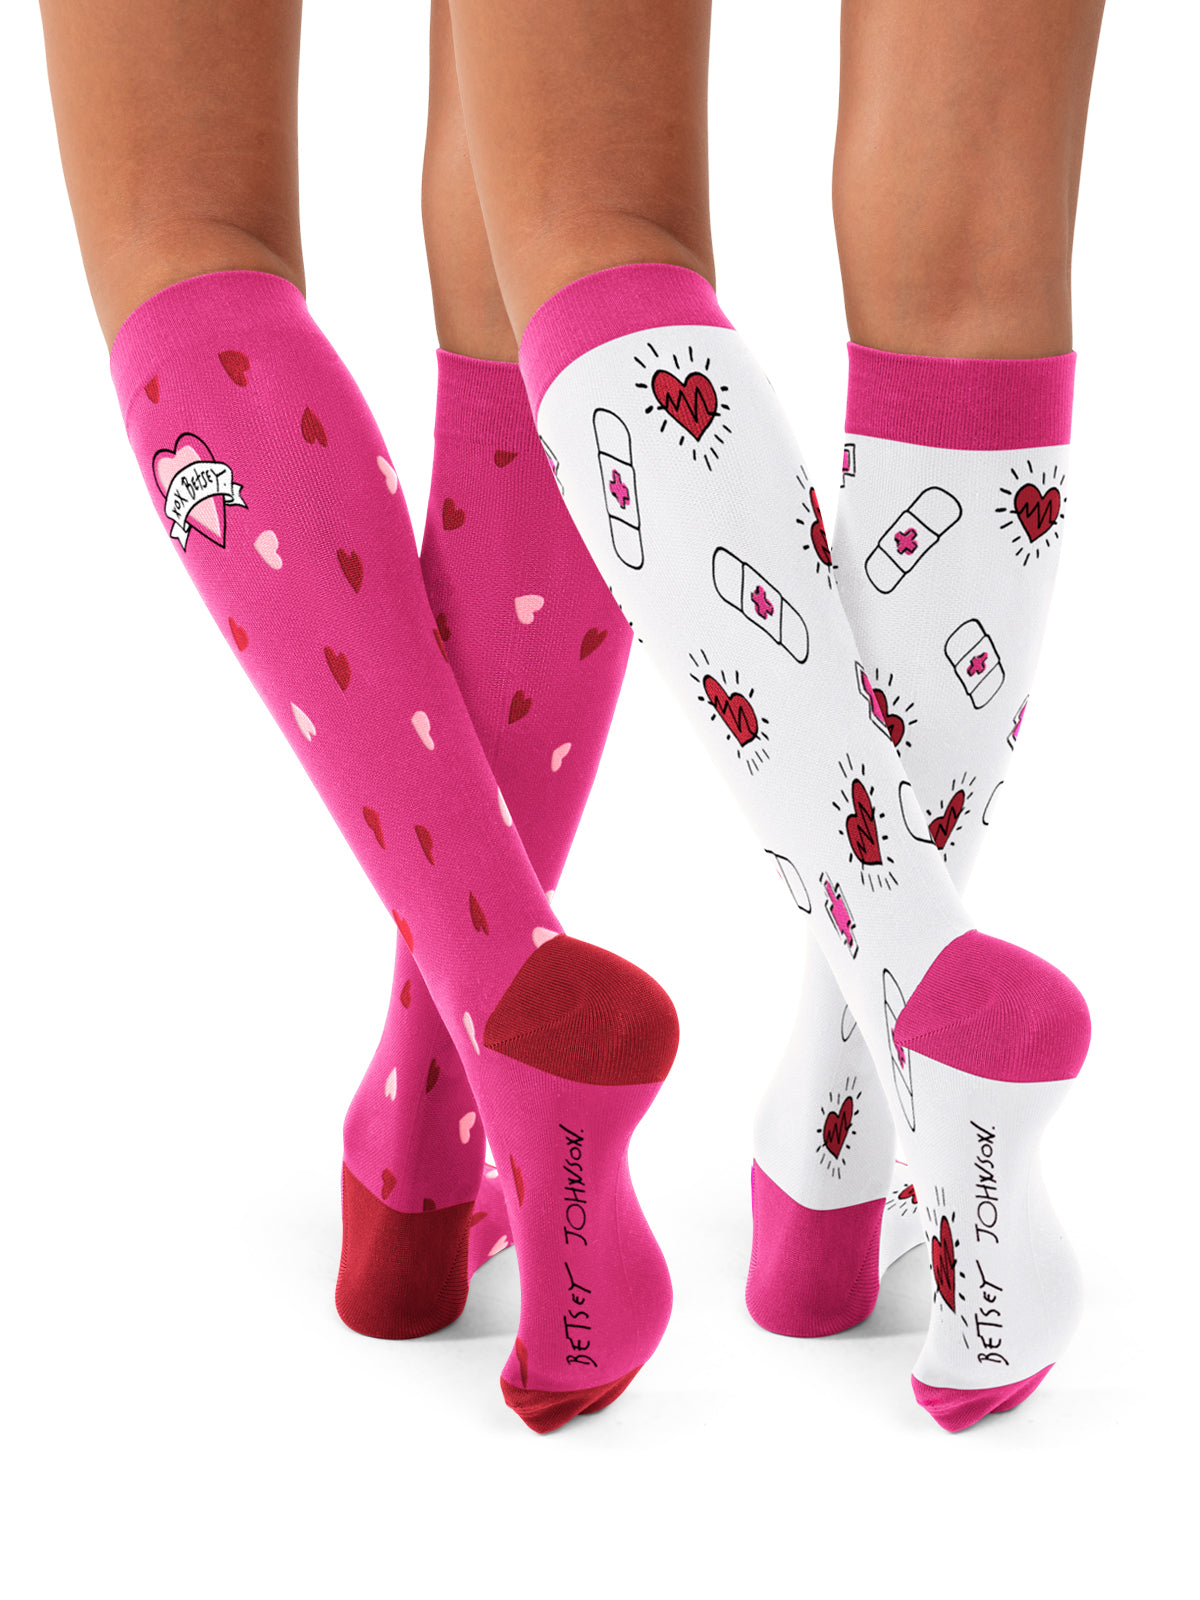 Women's Compression Socks & Hosiery